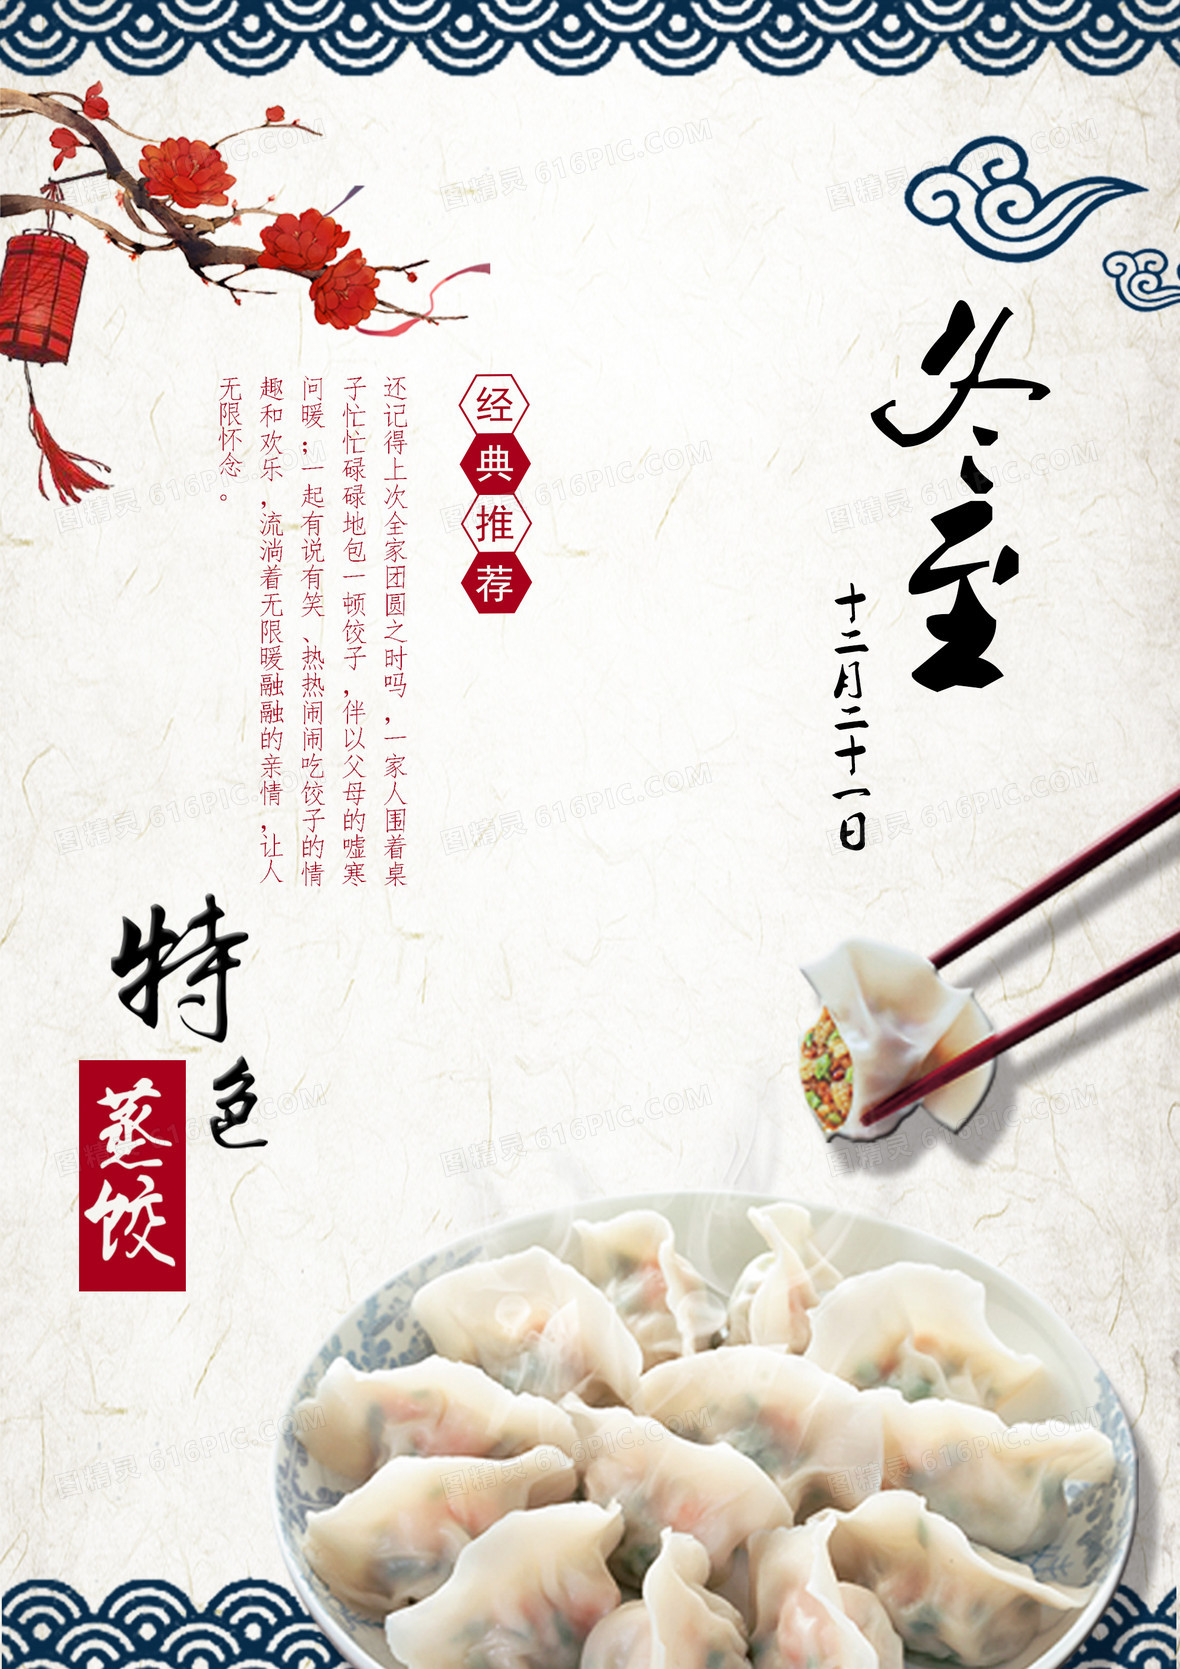 冬至吃饺子海报背景模板